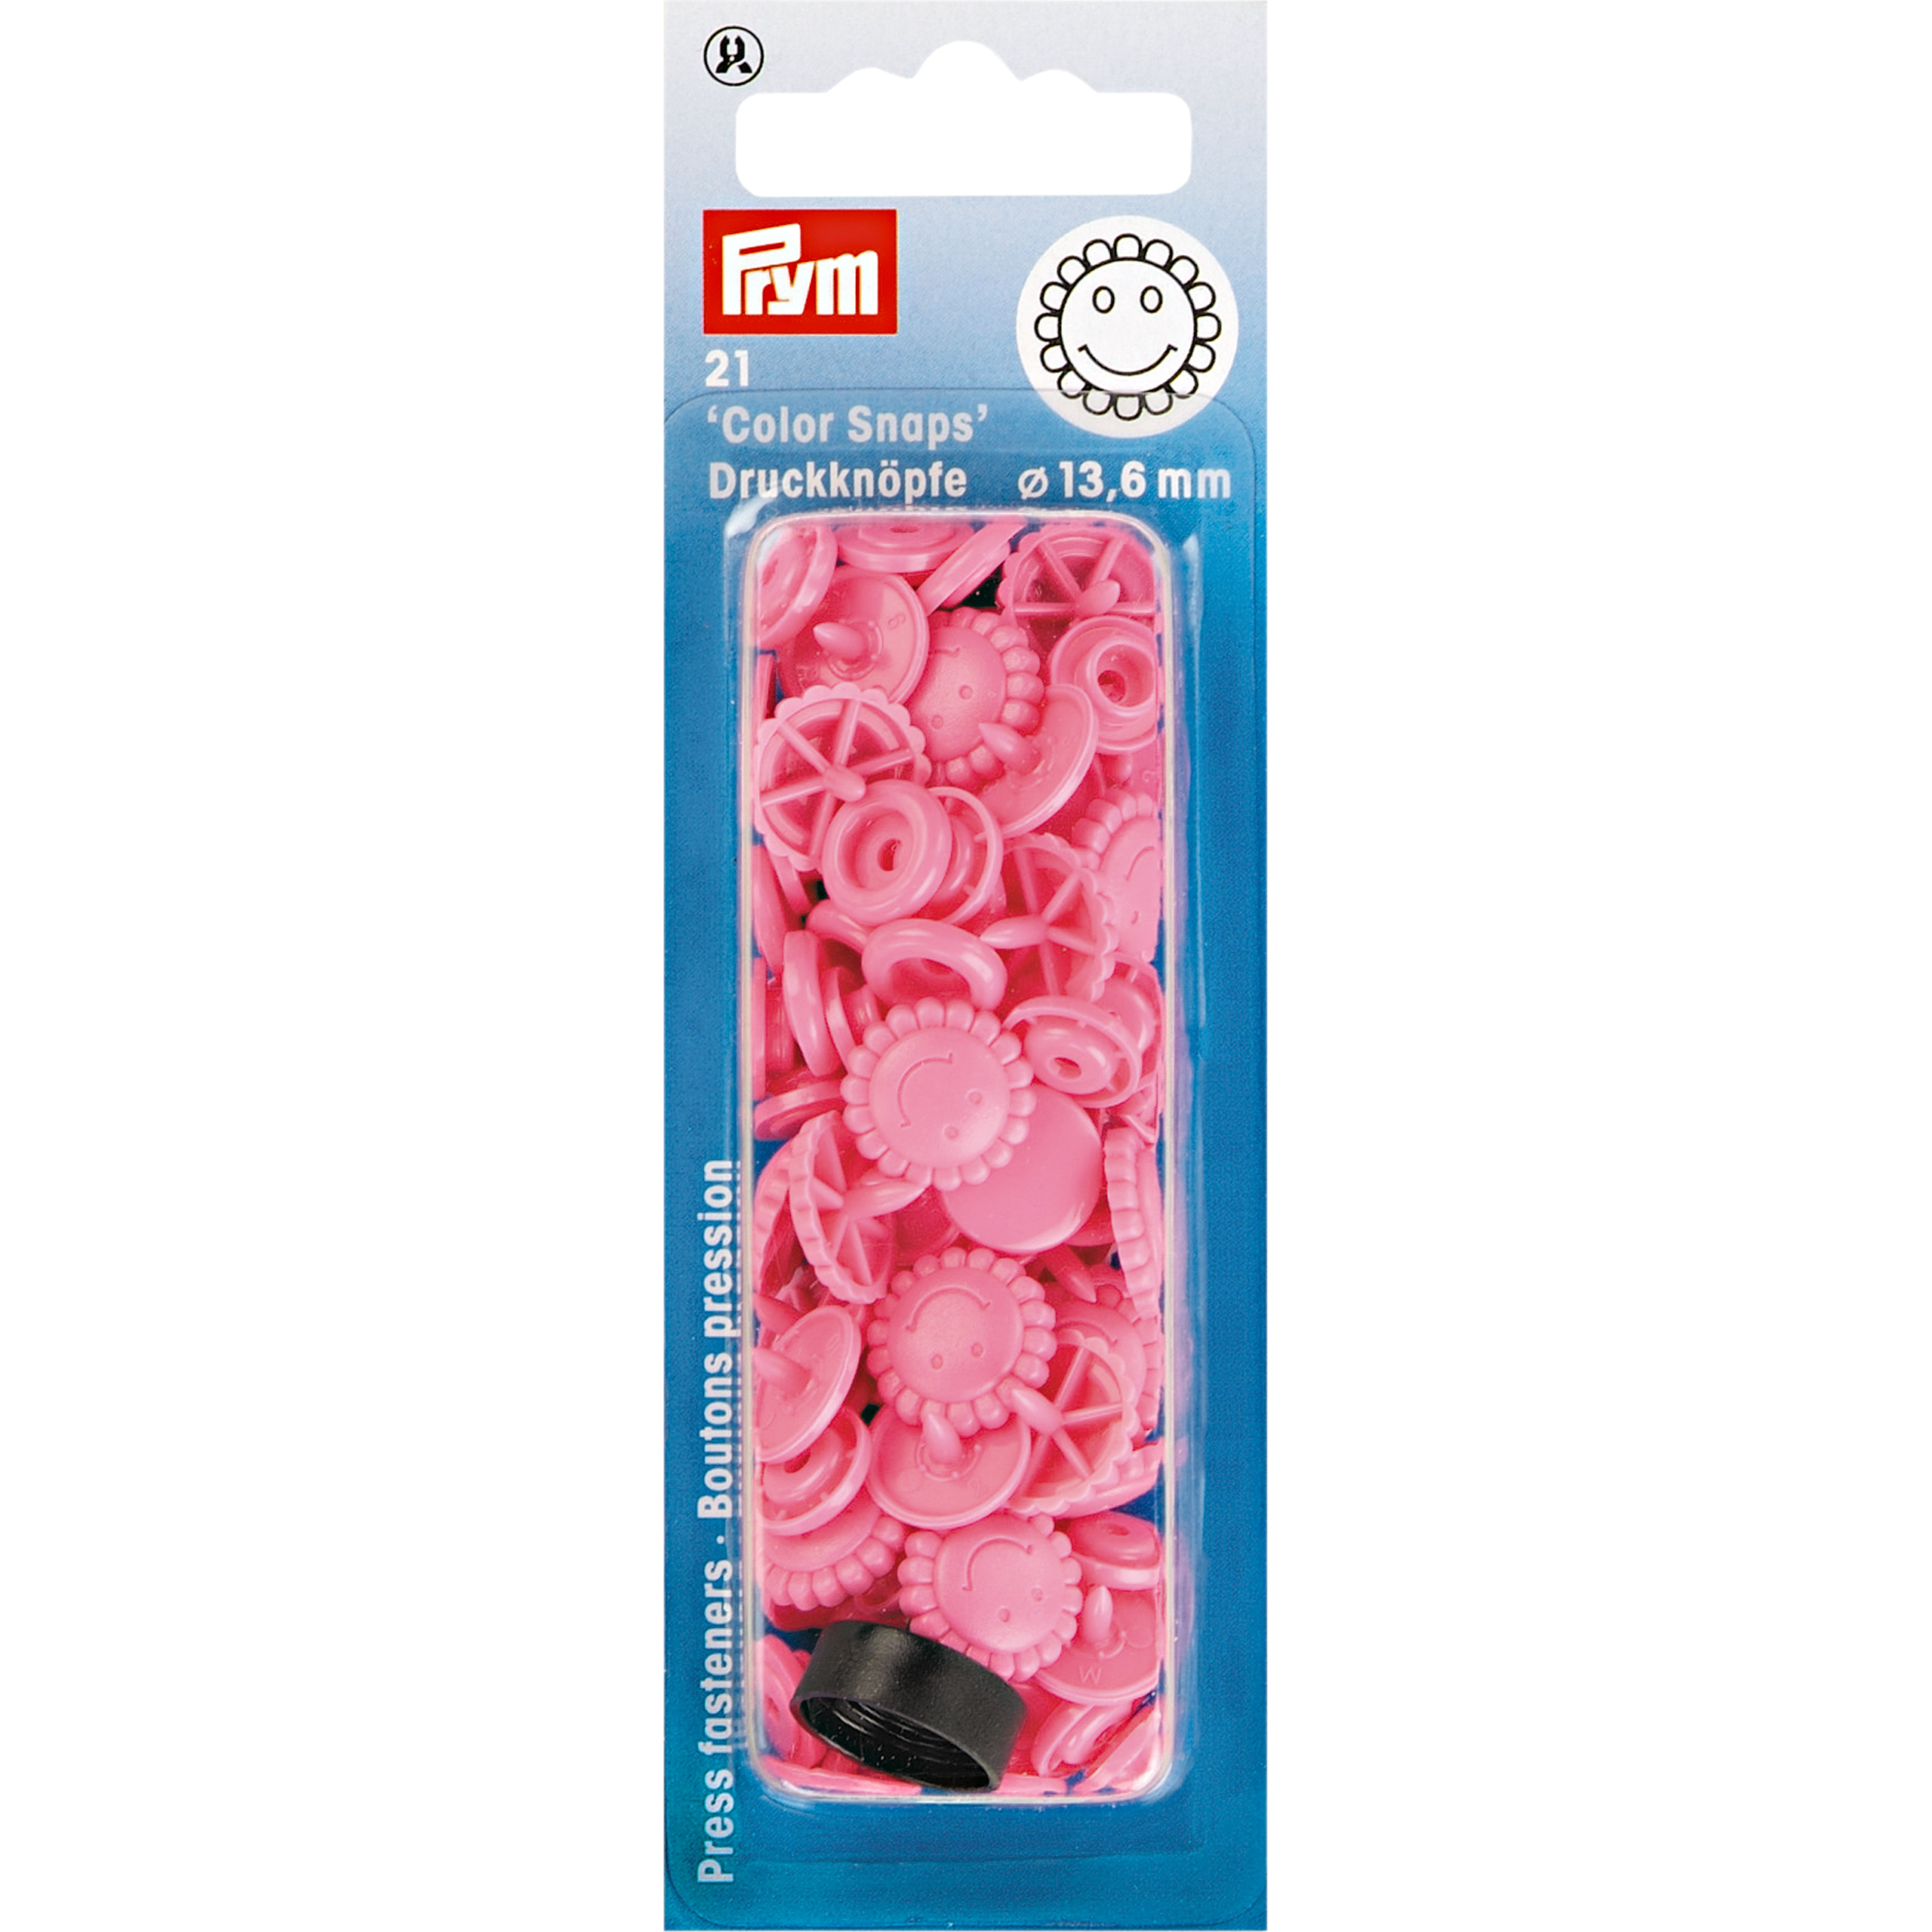 Nähfrei-Druckknöpfe Color Snaps Blume 13,6 mm, 21 St  von Prym türkis